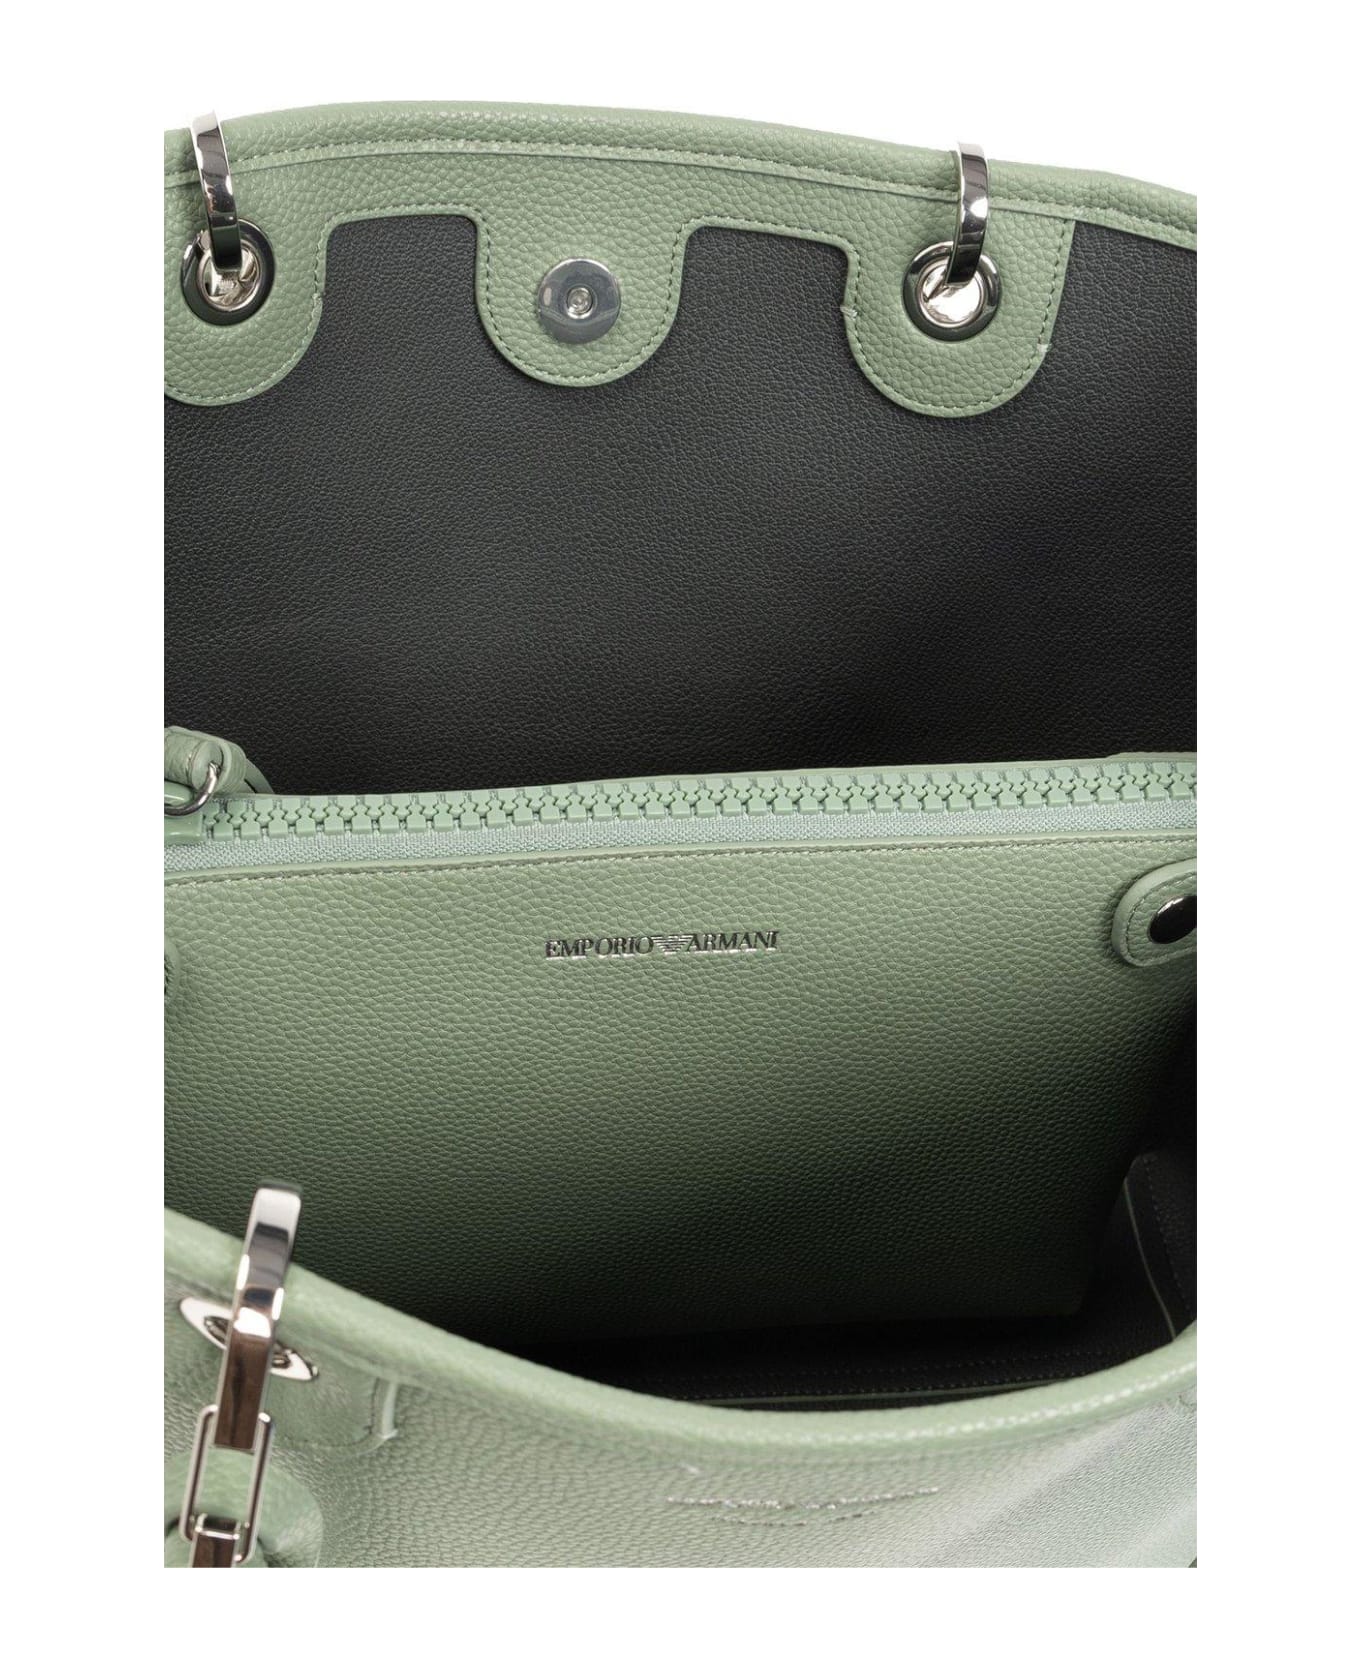 Emporio Armani Shopper Bag - Green トートバッグ